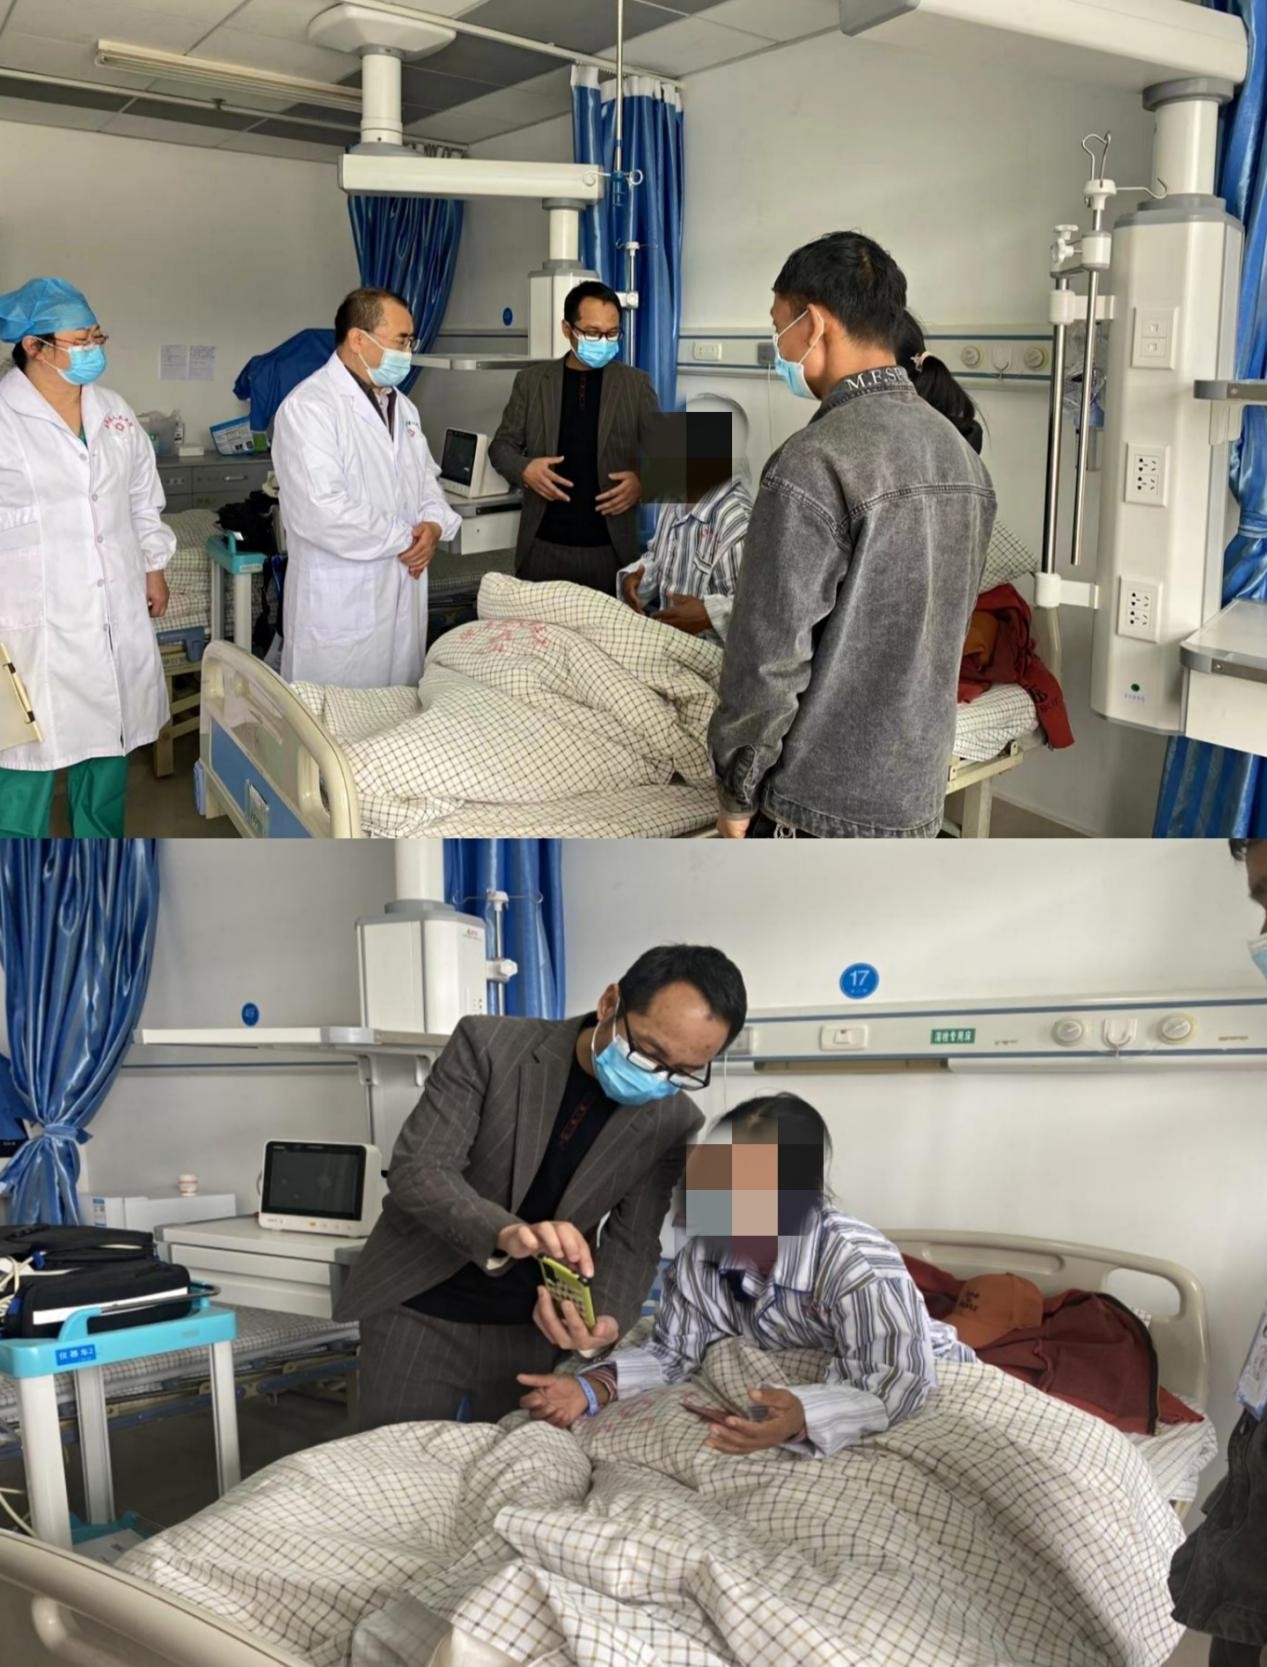 漾濞县人民医院开展首例心脏起搏器植入术